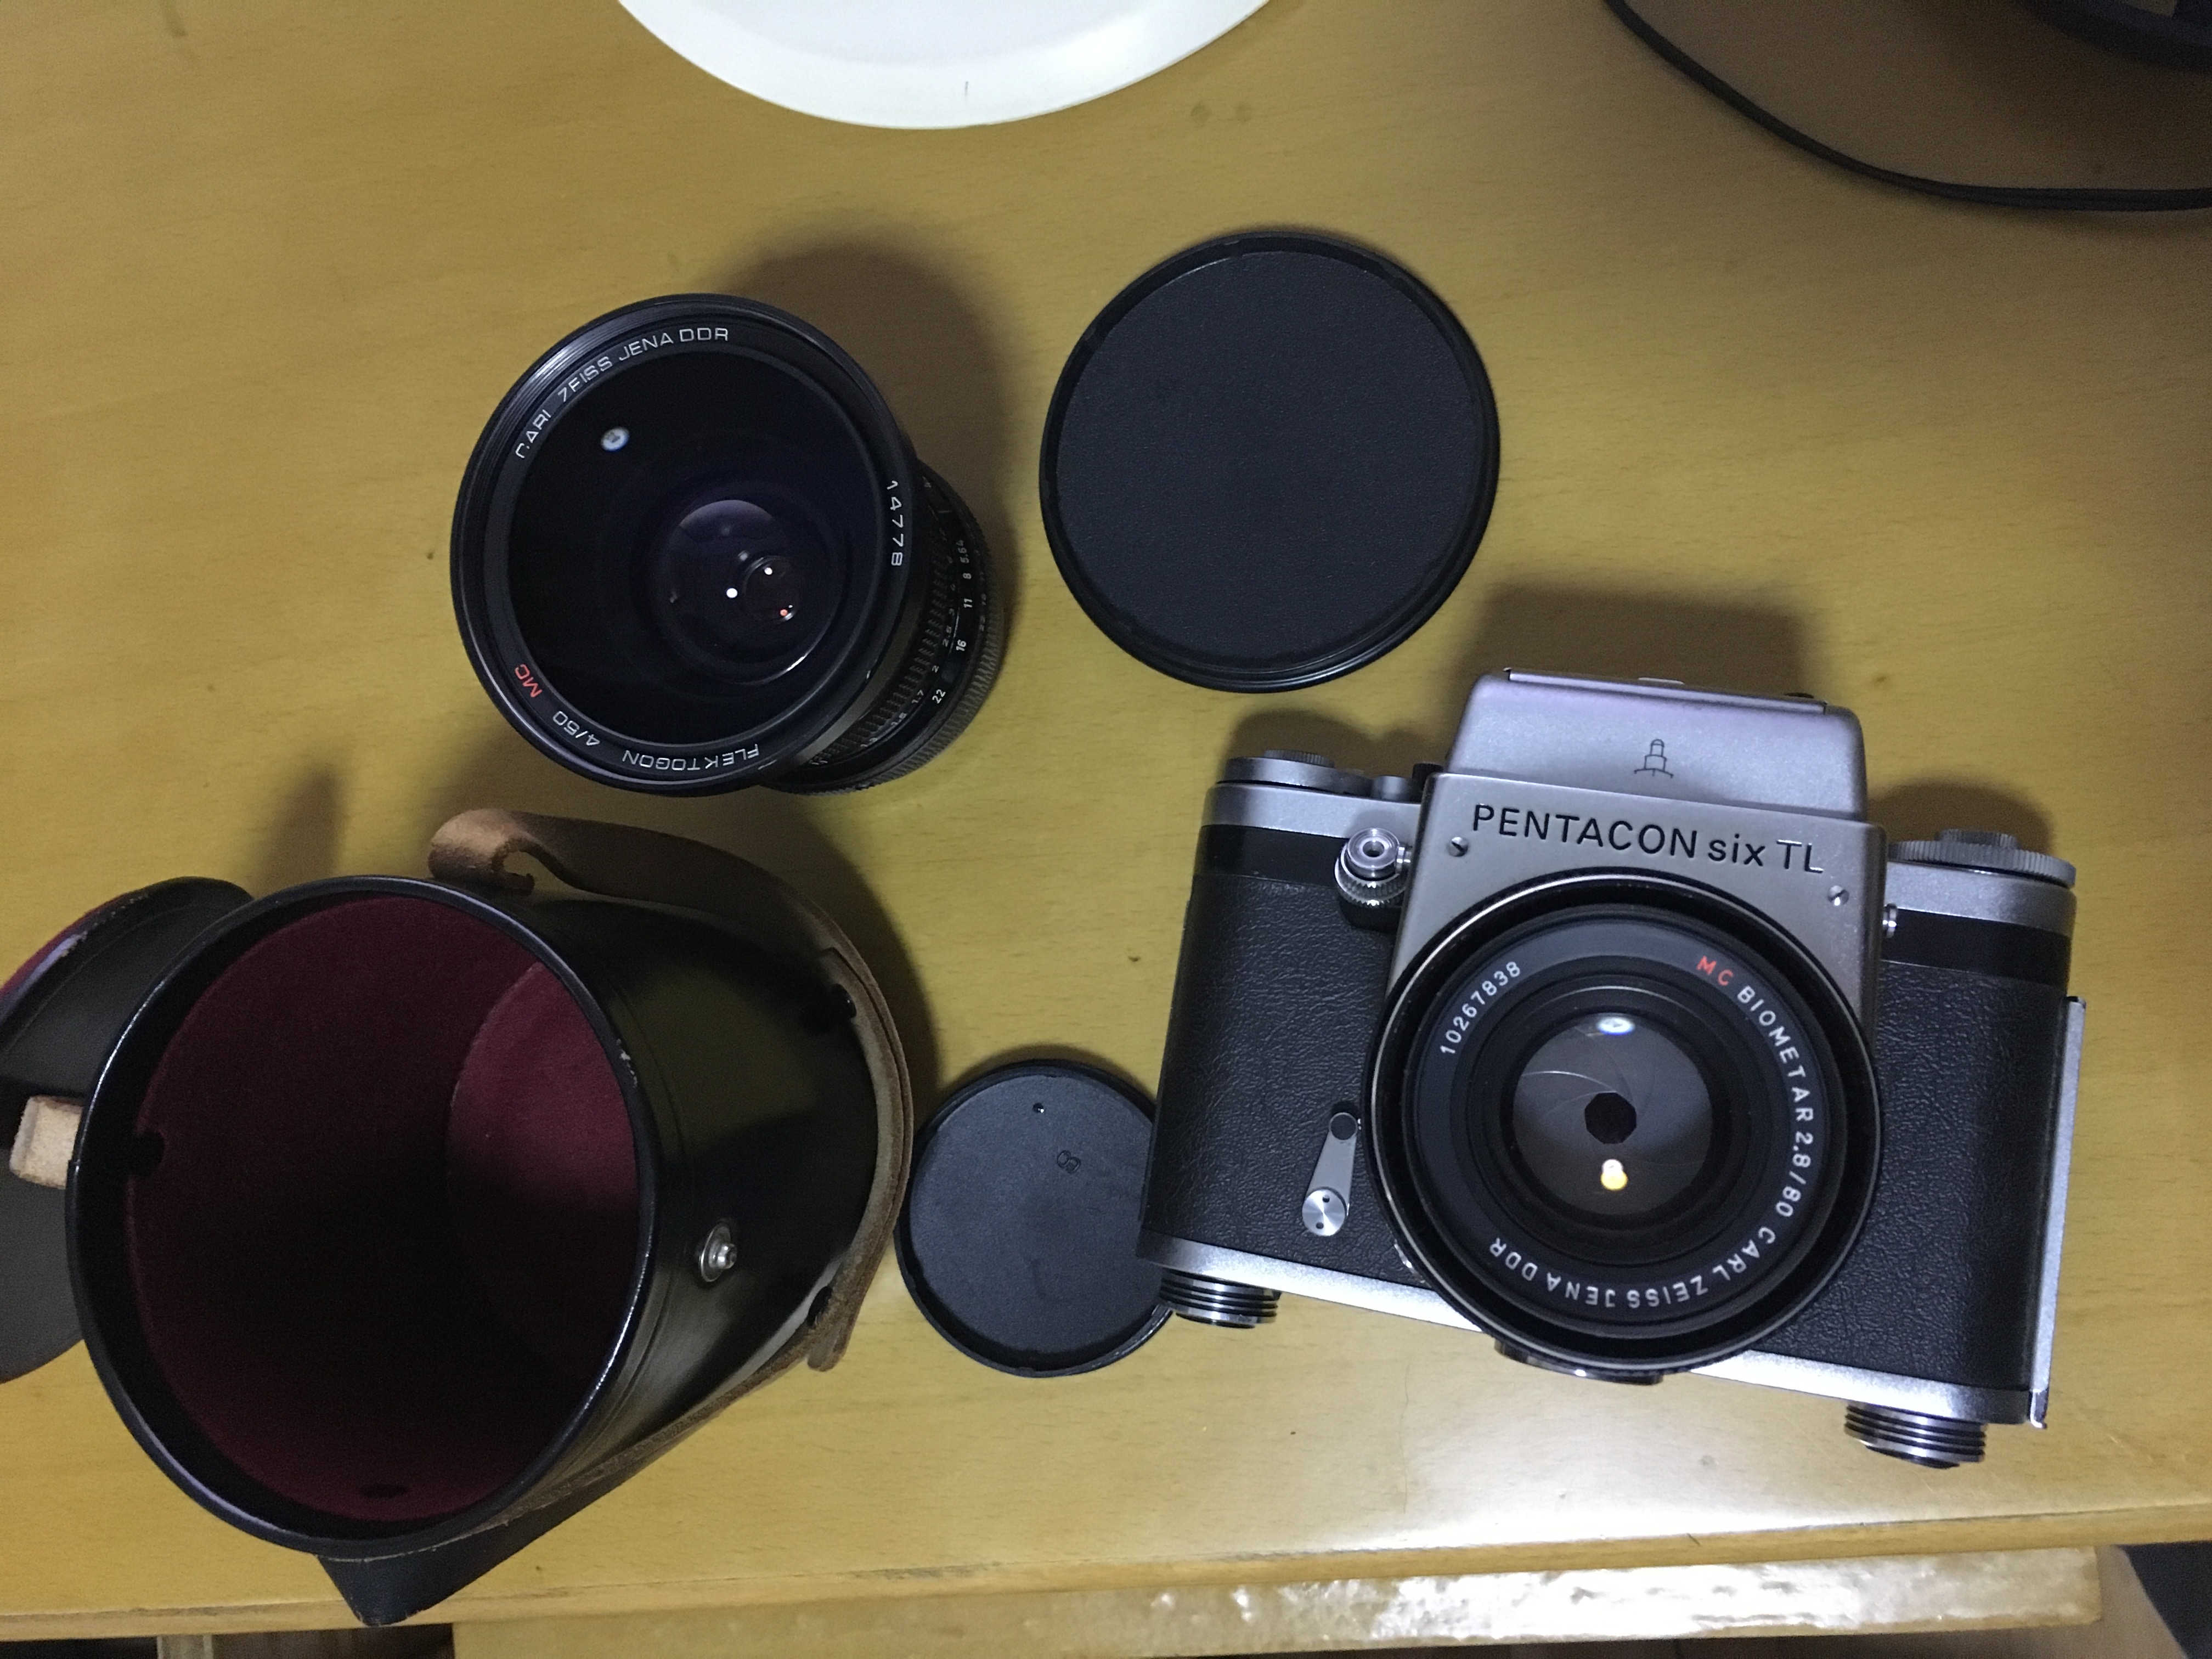 潘太康6相机一套爱普生扫描仪